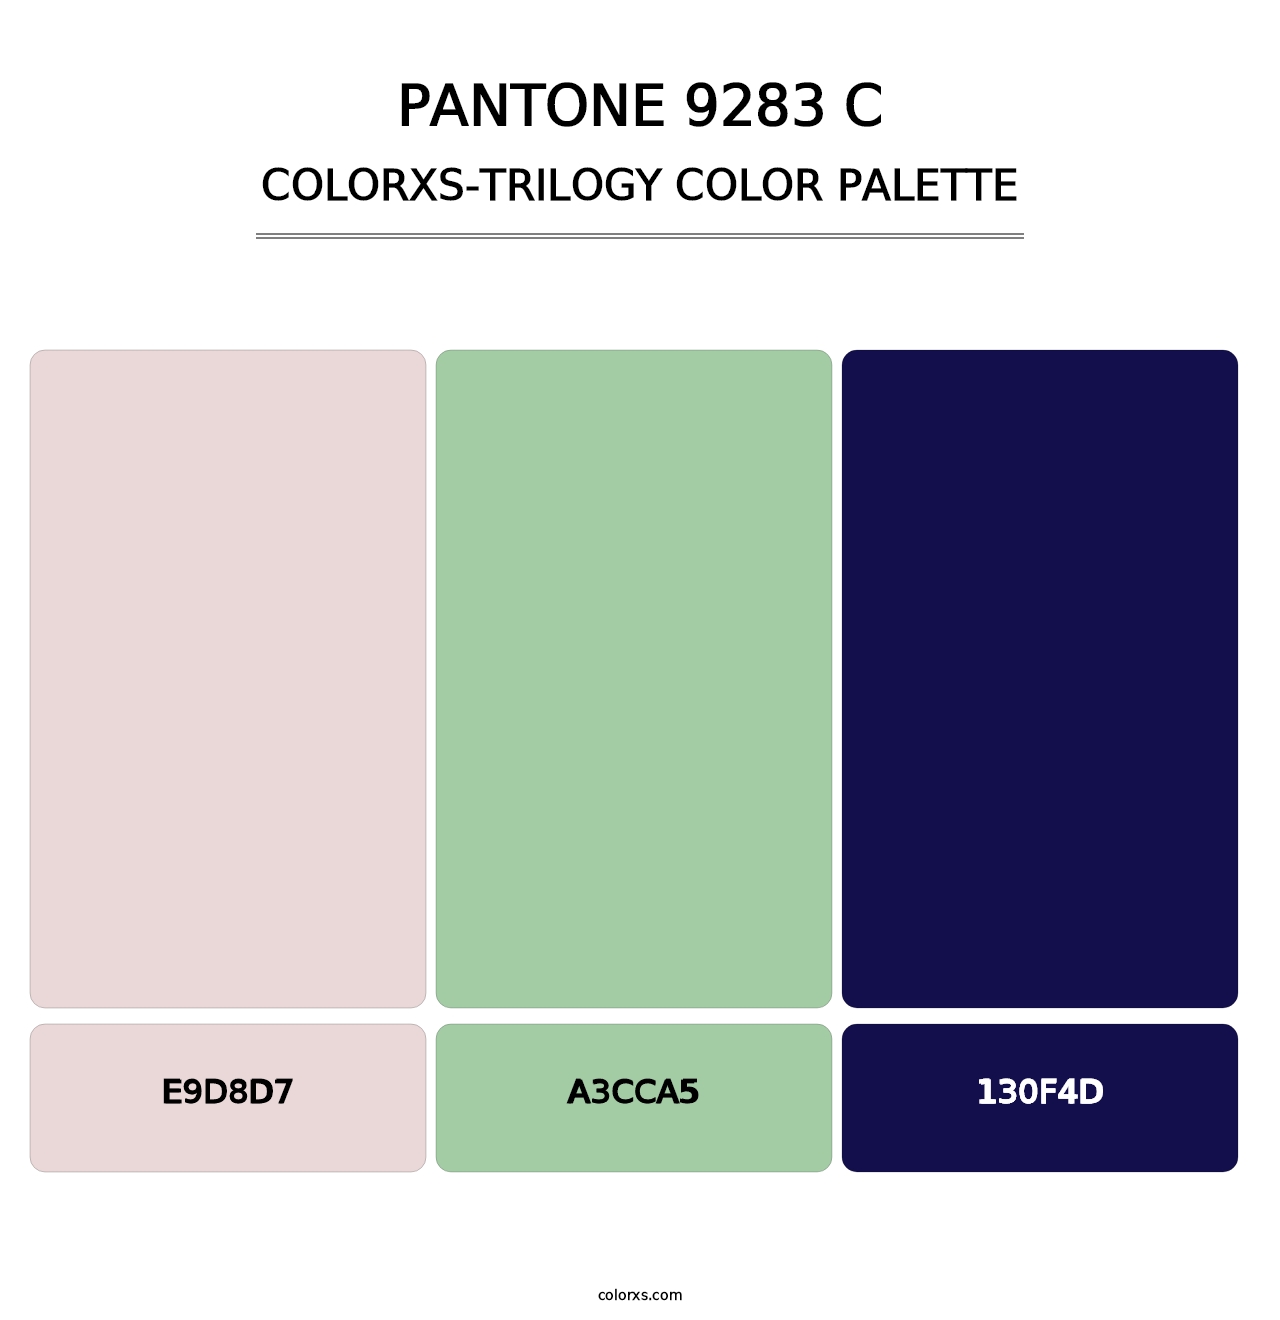 PANTONE 9283 C - Colorxs Trilogy Palette